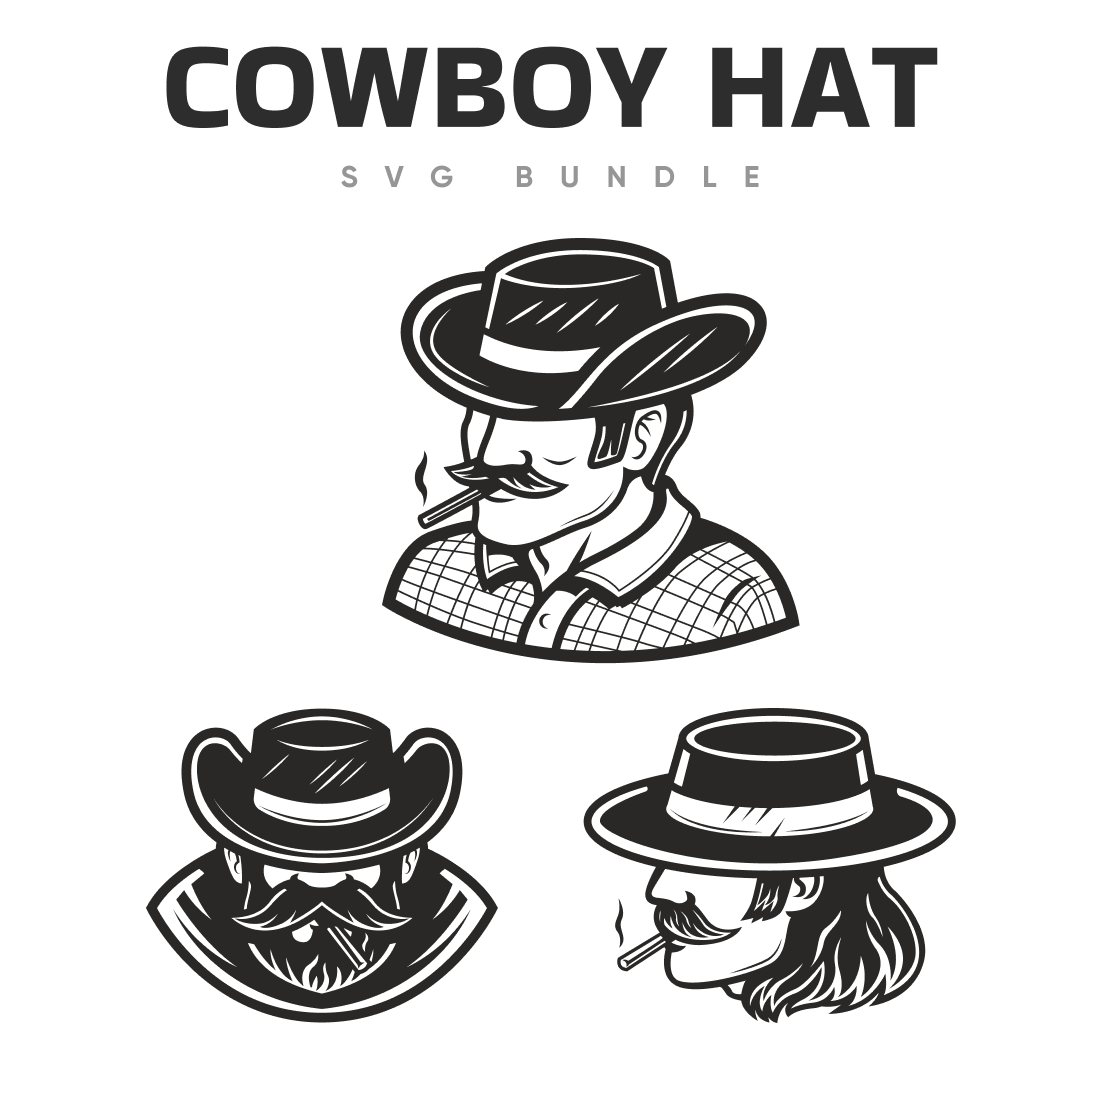 Cowboy Hat Clipart Black and White SVG bundle.